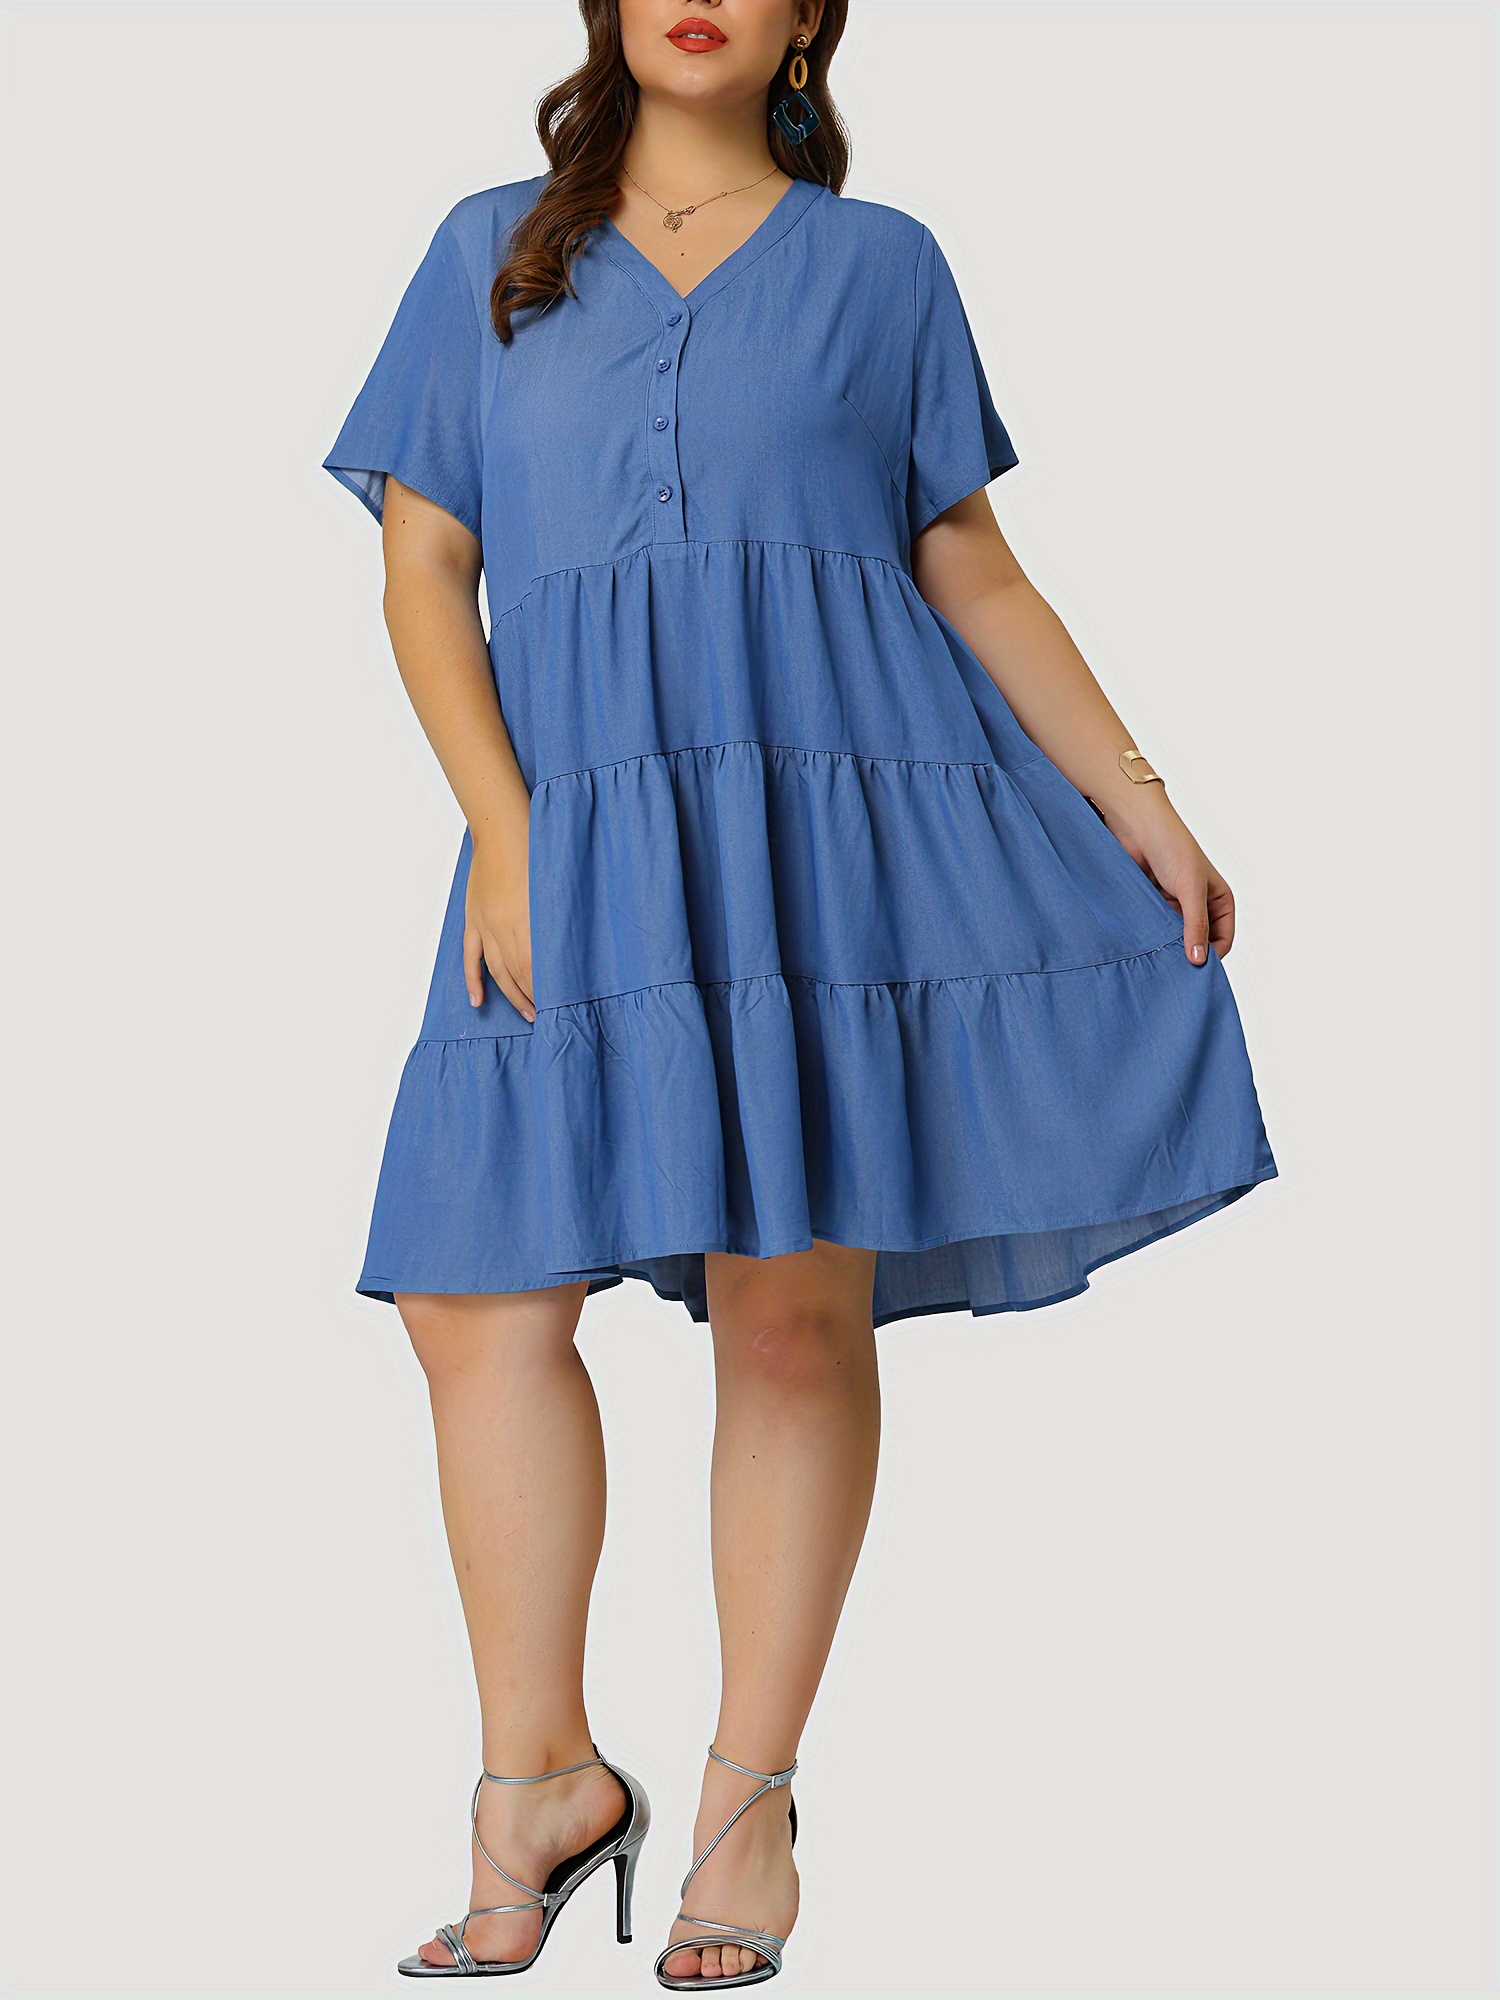 womens denim dress plus size plain washed blue layered ruffled v neck short sleeve single breasted denim dress